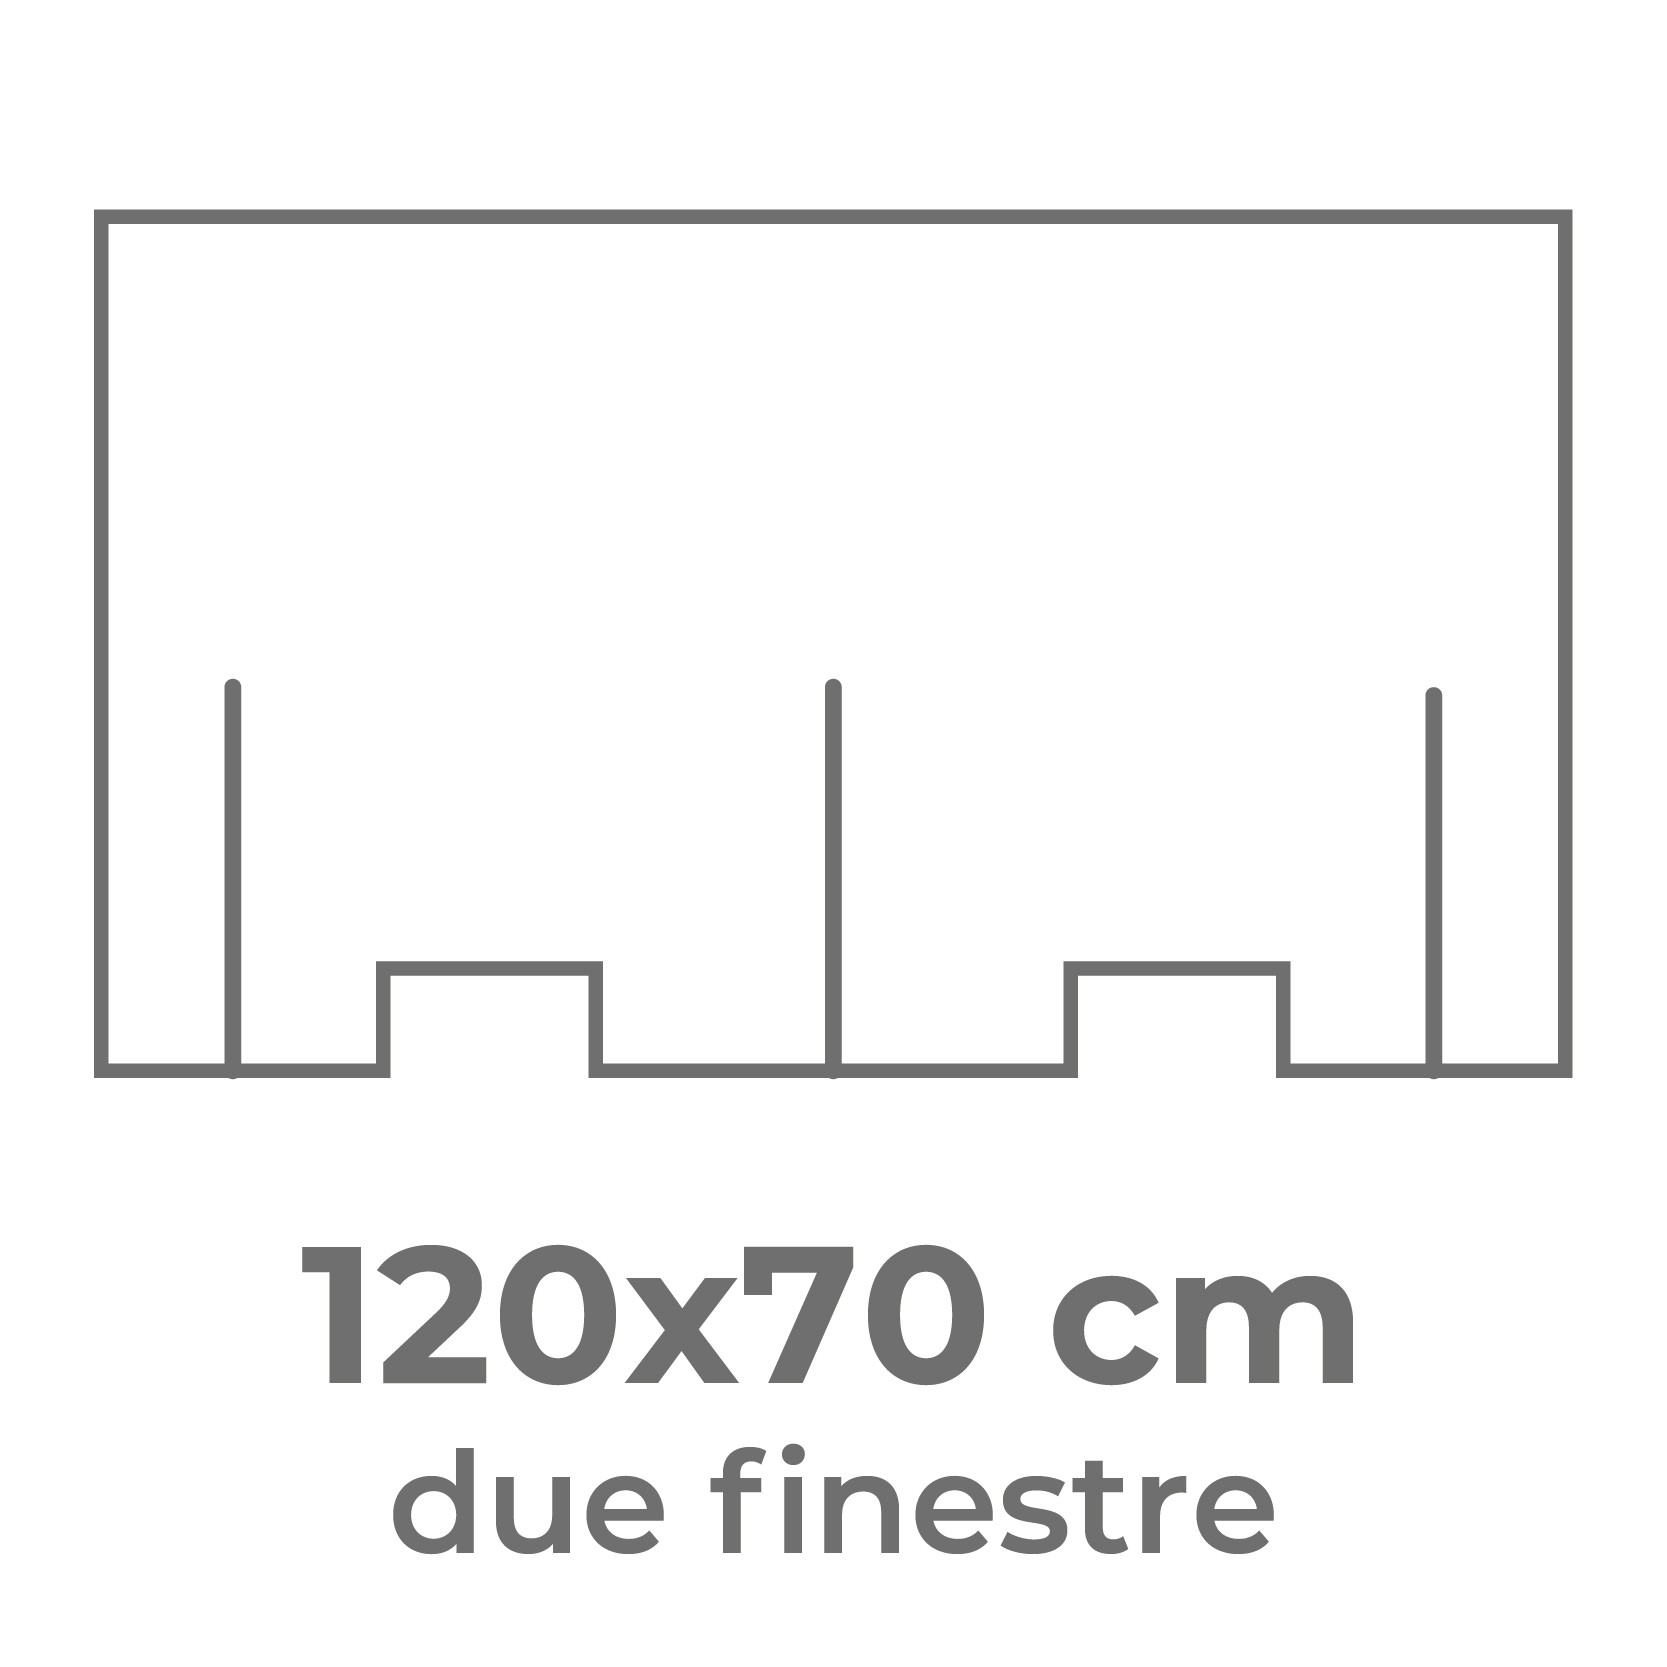 120x70 cm (uso doppio)